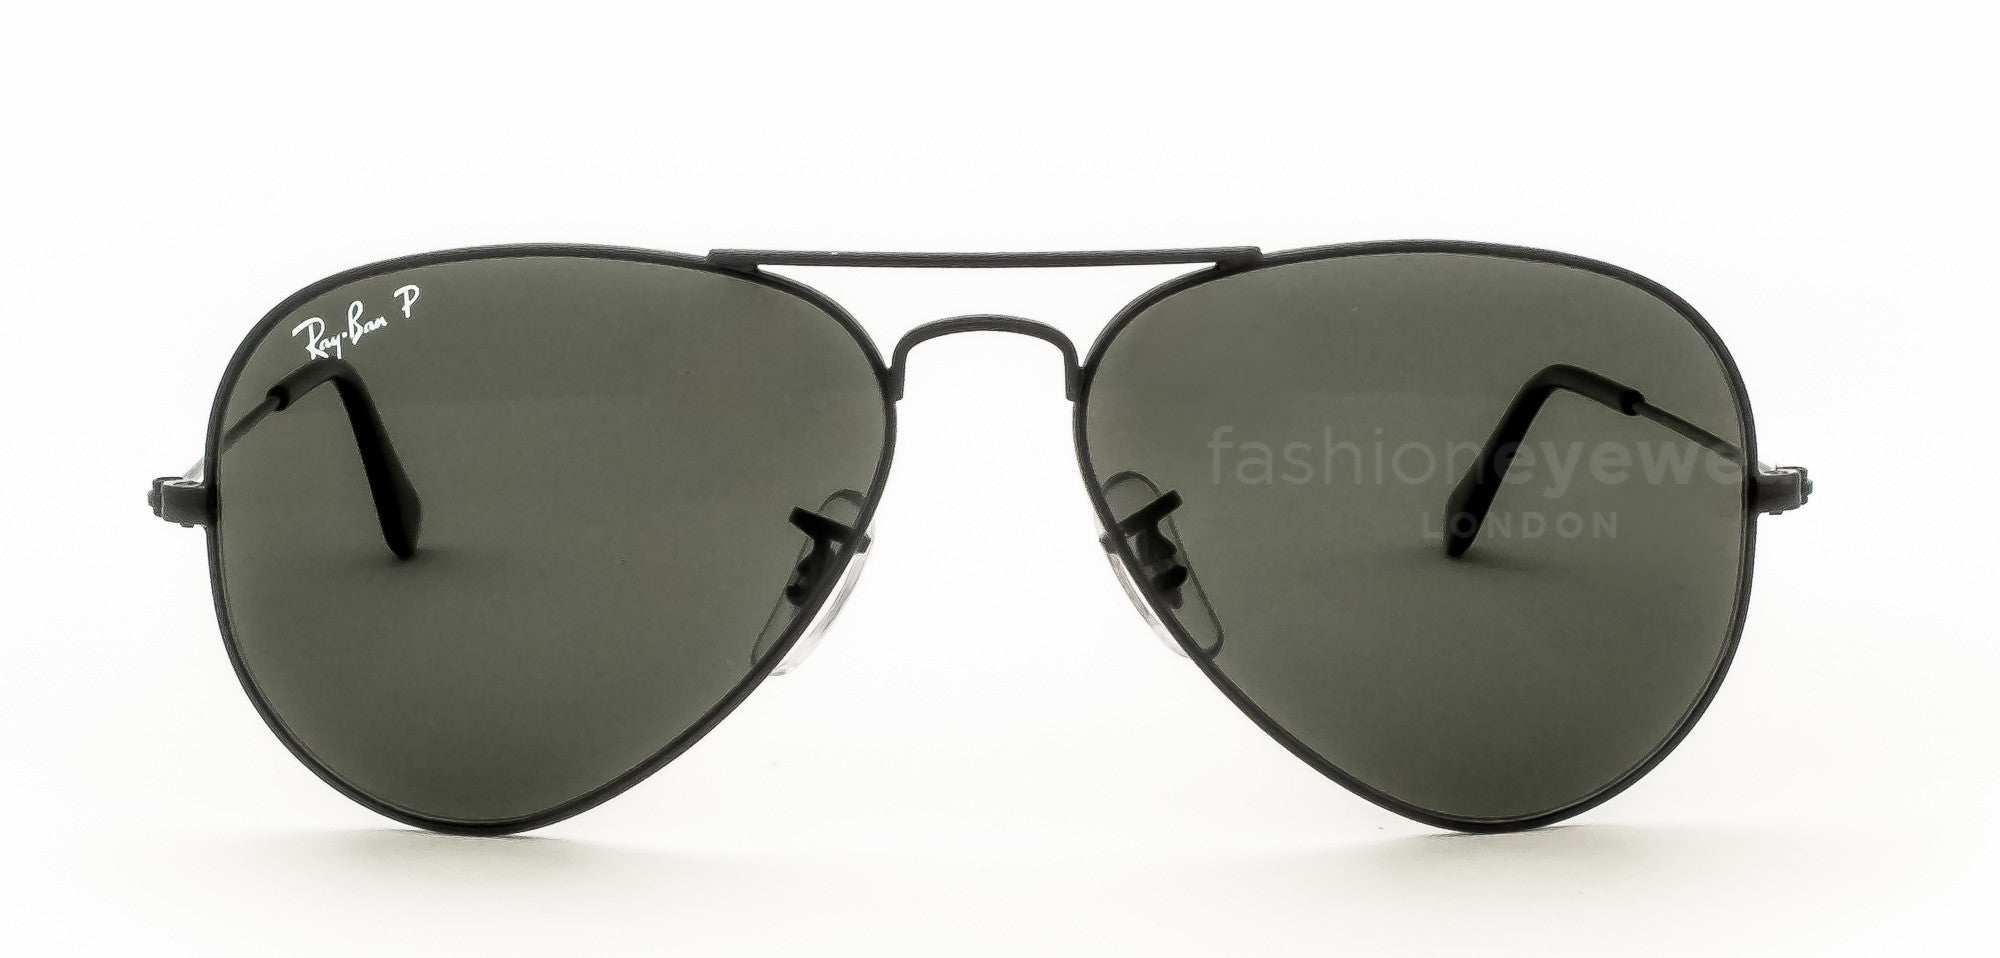 Miranda Kerr wearing Ray-Ban 3025 Aviator Sunglasses Sunglasses